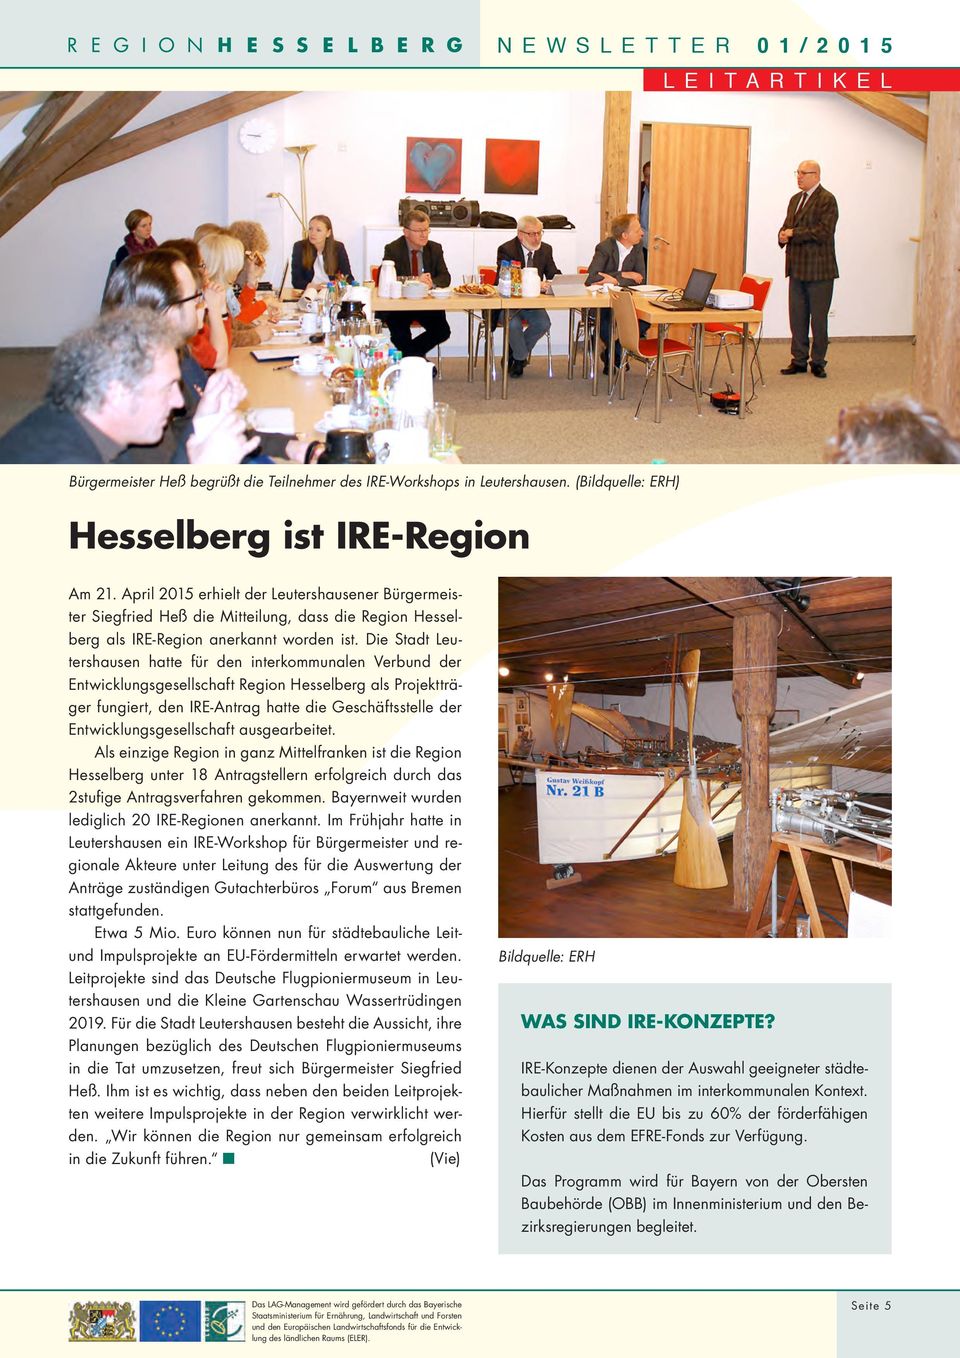 Die Stadt Leutershausen hatte für den interkommunalen Verbund der Entwicklungsgesellschaft Region Hesselberg als Projektträger fungiert, den IRE-Antrag hatte die Geschäftsstelle der